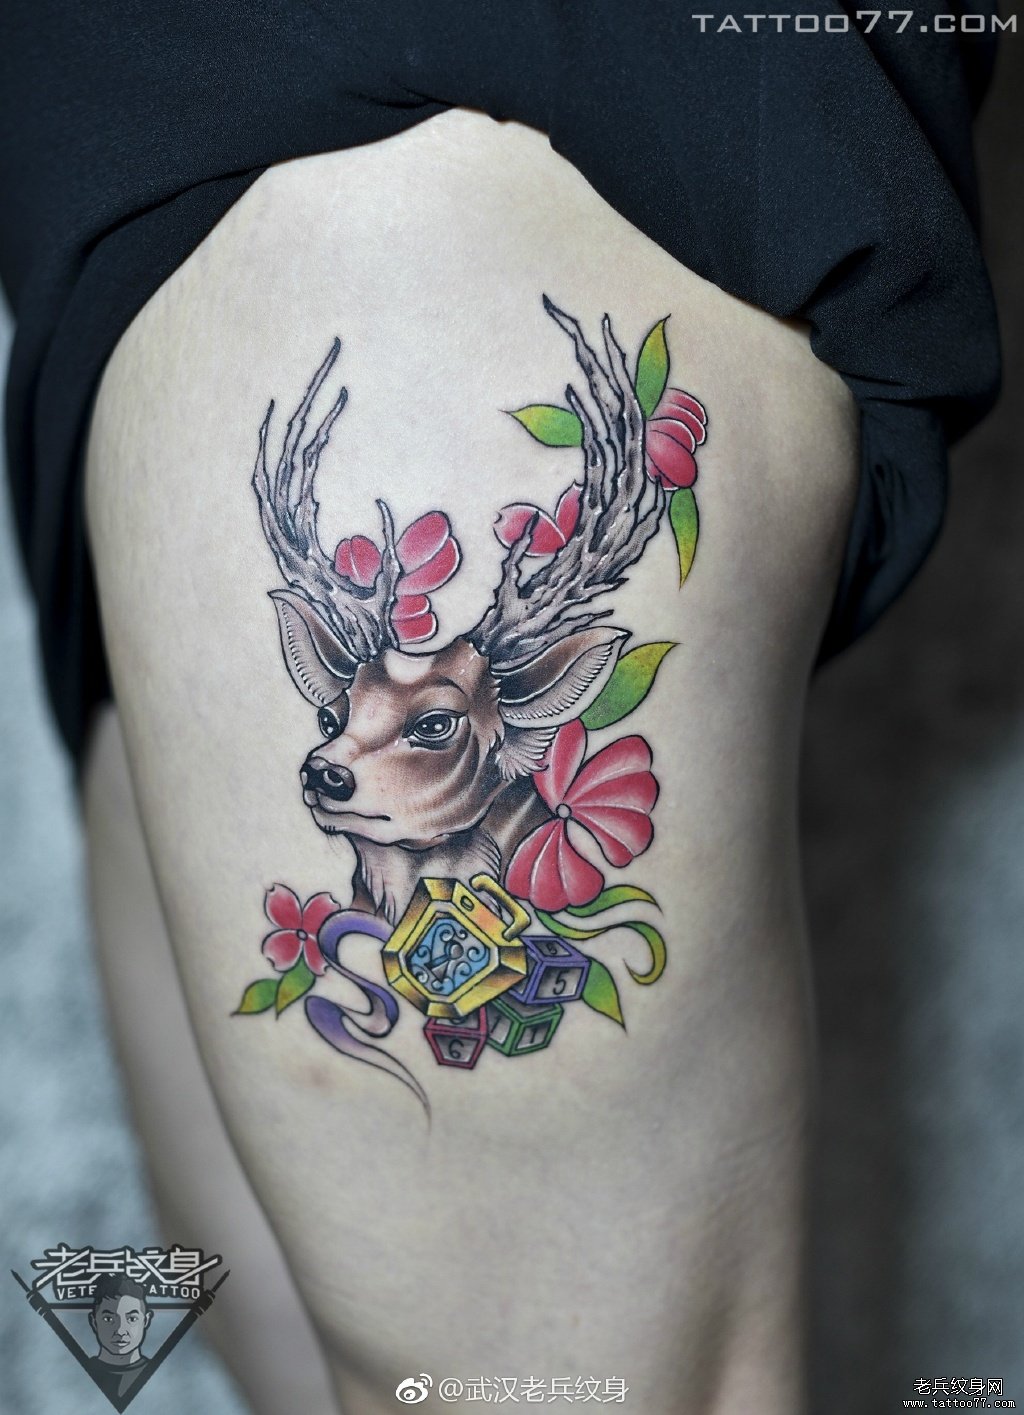 大腿鹿纹身图案作品武汉纹身师打造